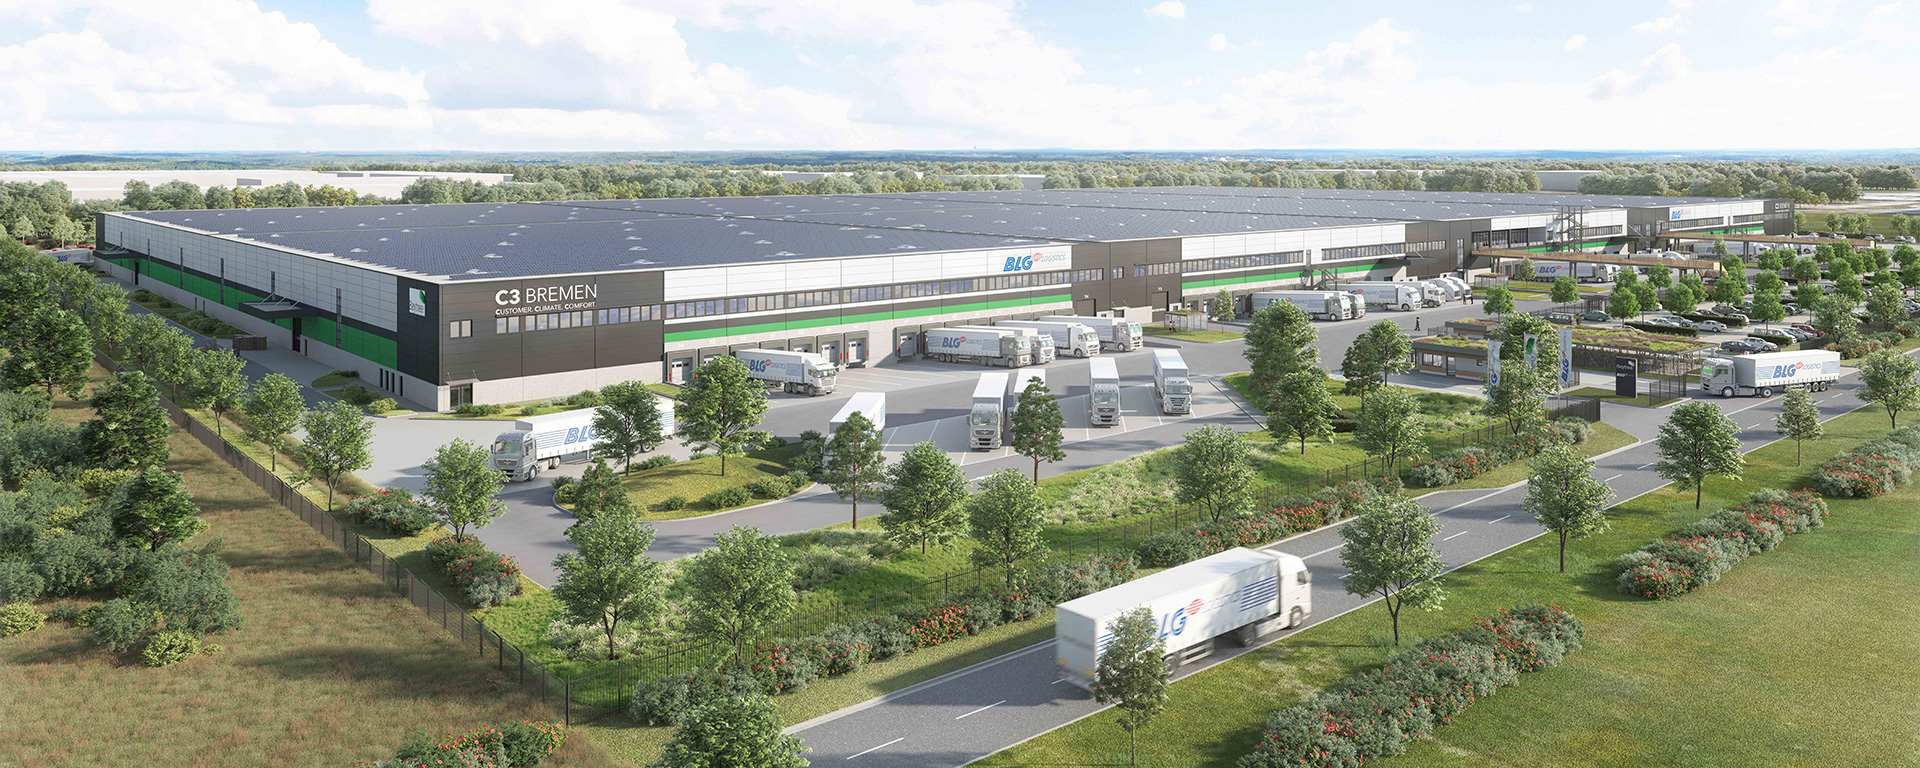 C3 Bremen: Ökologisches Logistikzentrum mit Vorbildcharakter